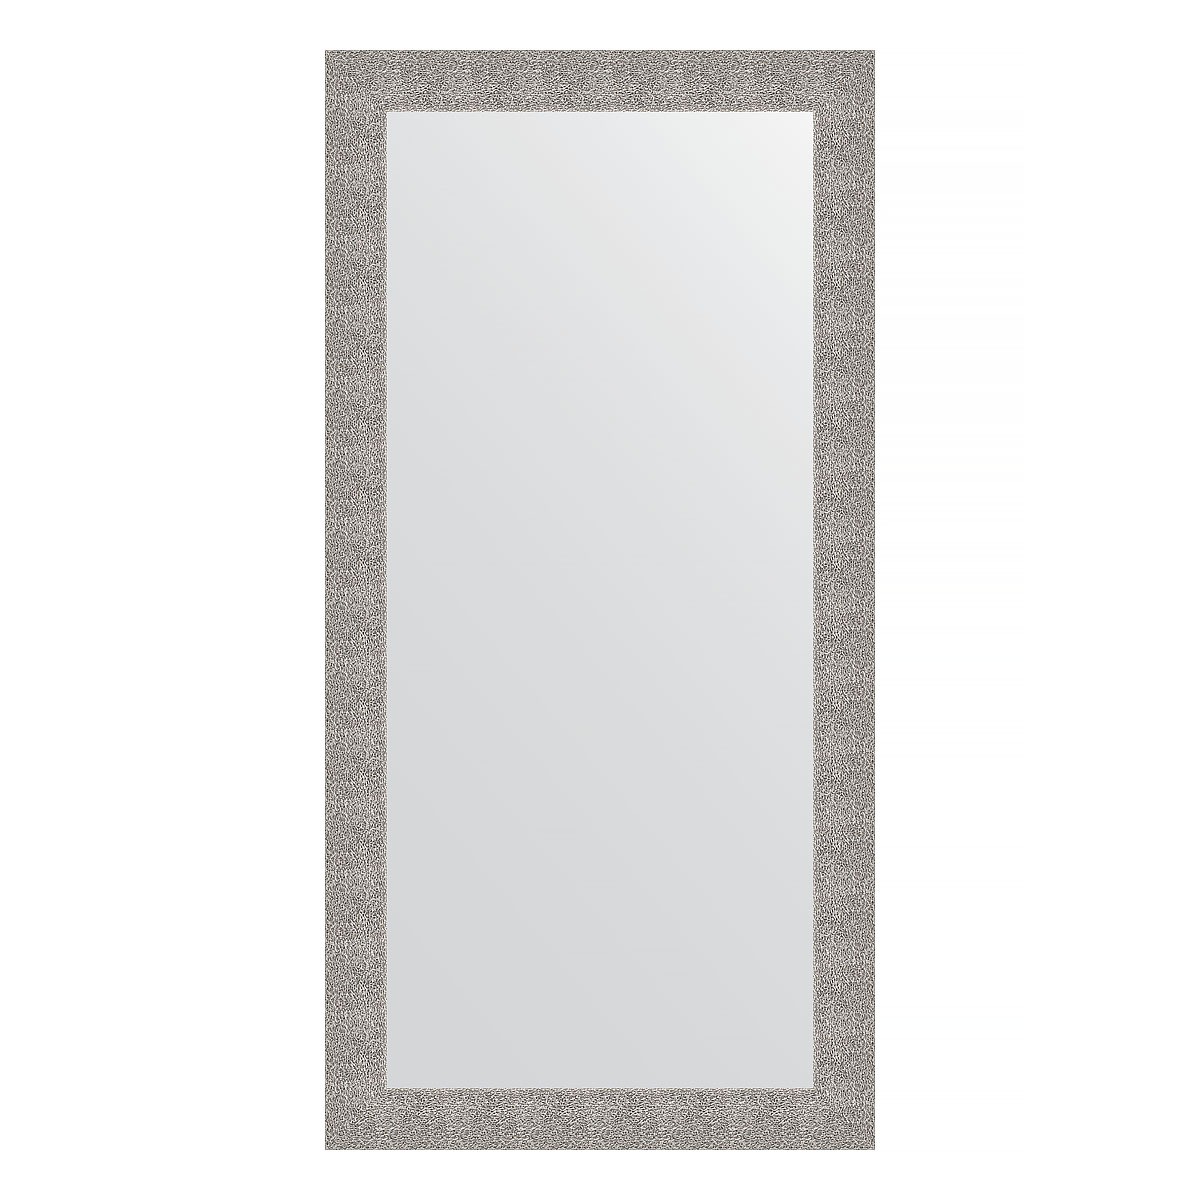 Зеркало в багетной раме Evoform чеканка серебряная 90 мм 80х160 см зеркало 51х141 см чеканка белая evoform definite by 3098